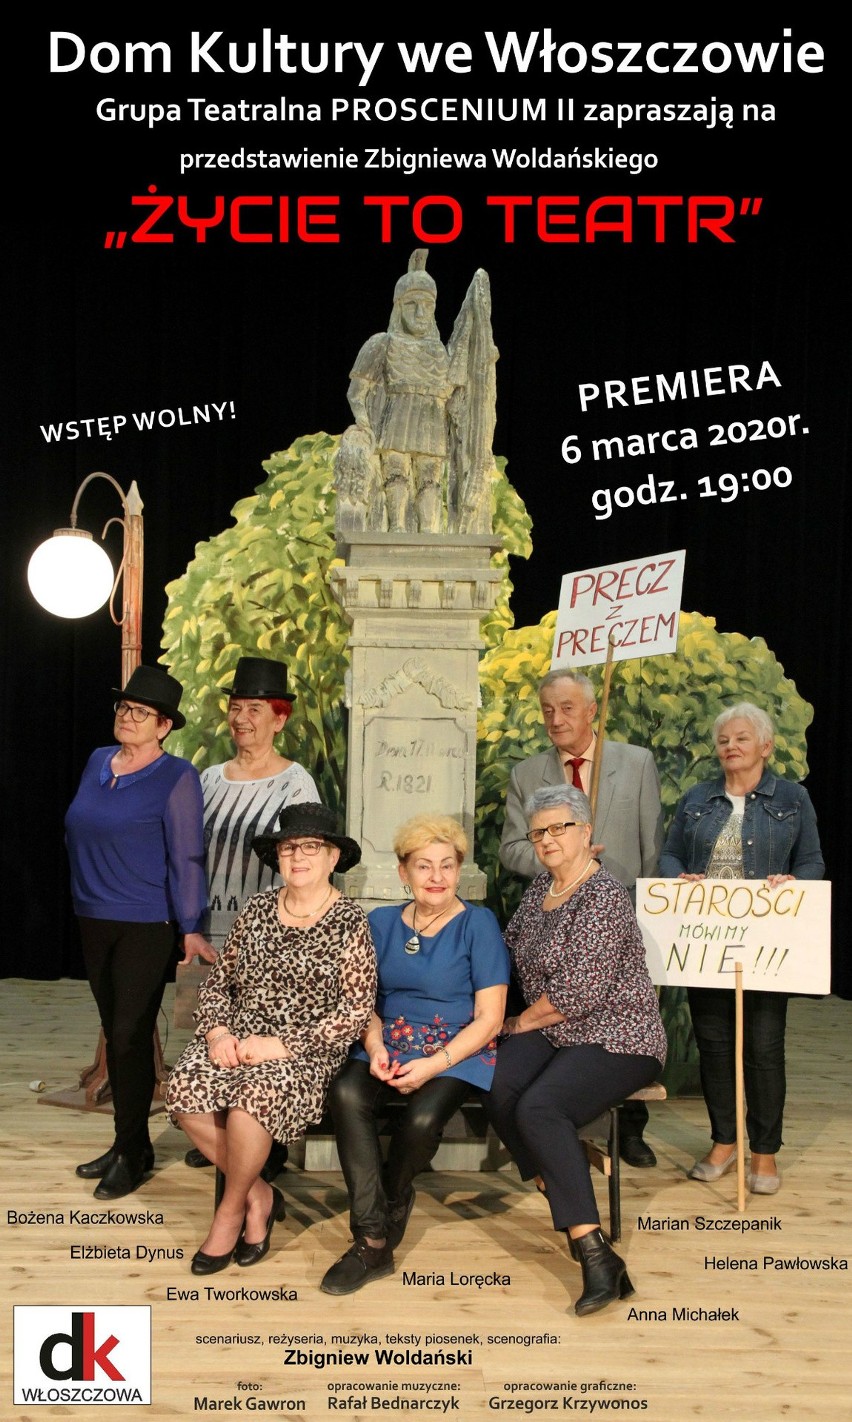 Nowy spektakl włoszczowskiej Grupy Teatralnej Proscenium w reżyserii Zbigniewa Woldańskiego (WIDEO)